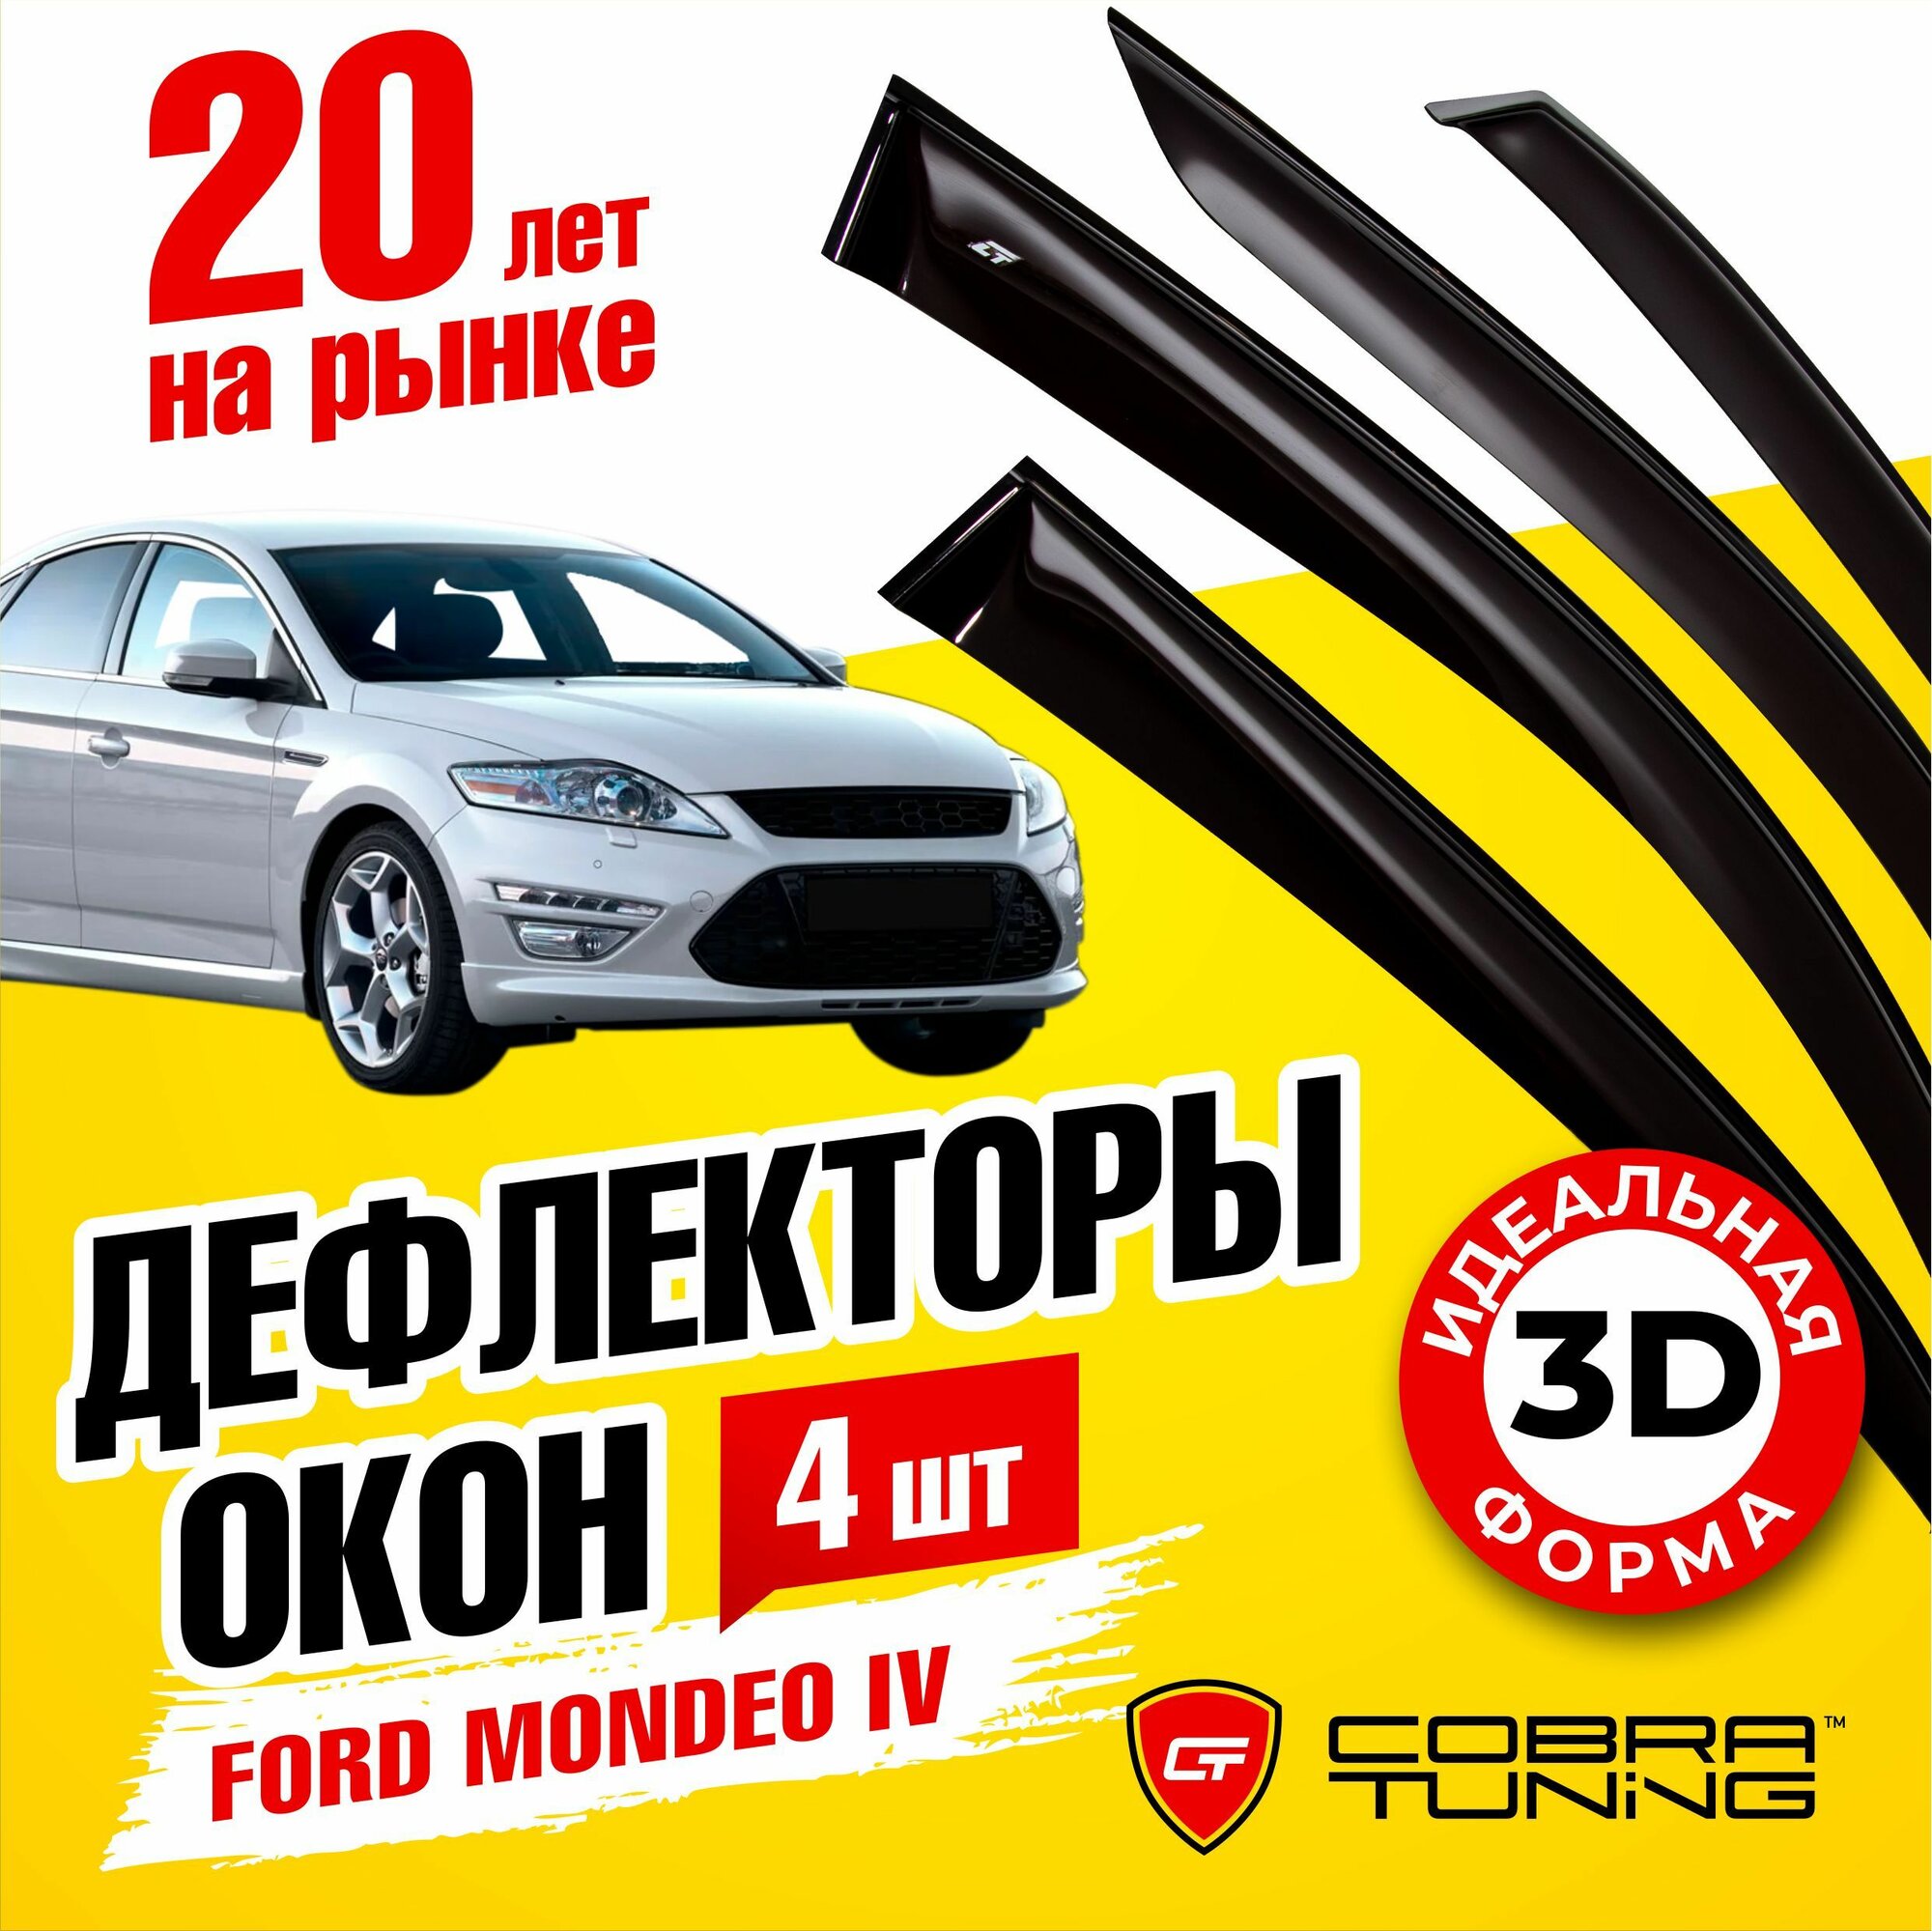 Дефлекторы боковых окон для Ford Mondeo IV (Форд Мондео 4) седан 2007-2013 (Комплектация Сhrome, для авто без хром пакета не подходит), ветровики на двери автомобиля, Cobra Tuning